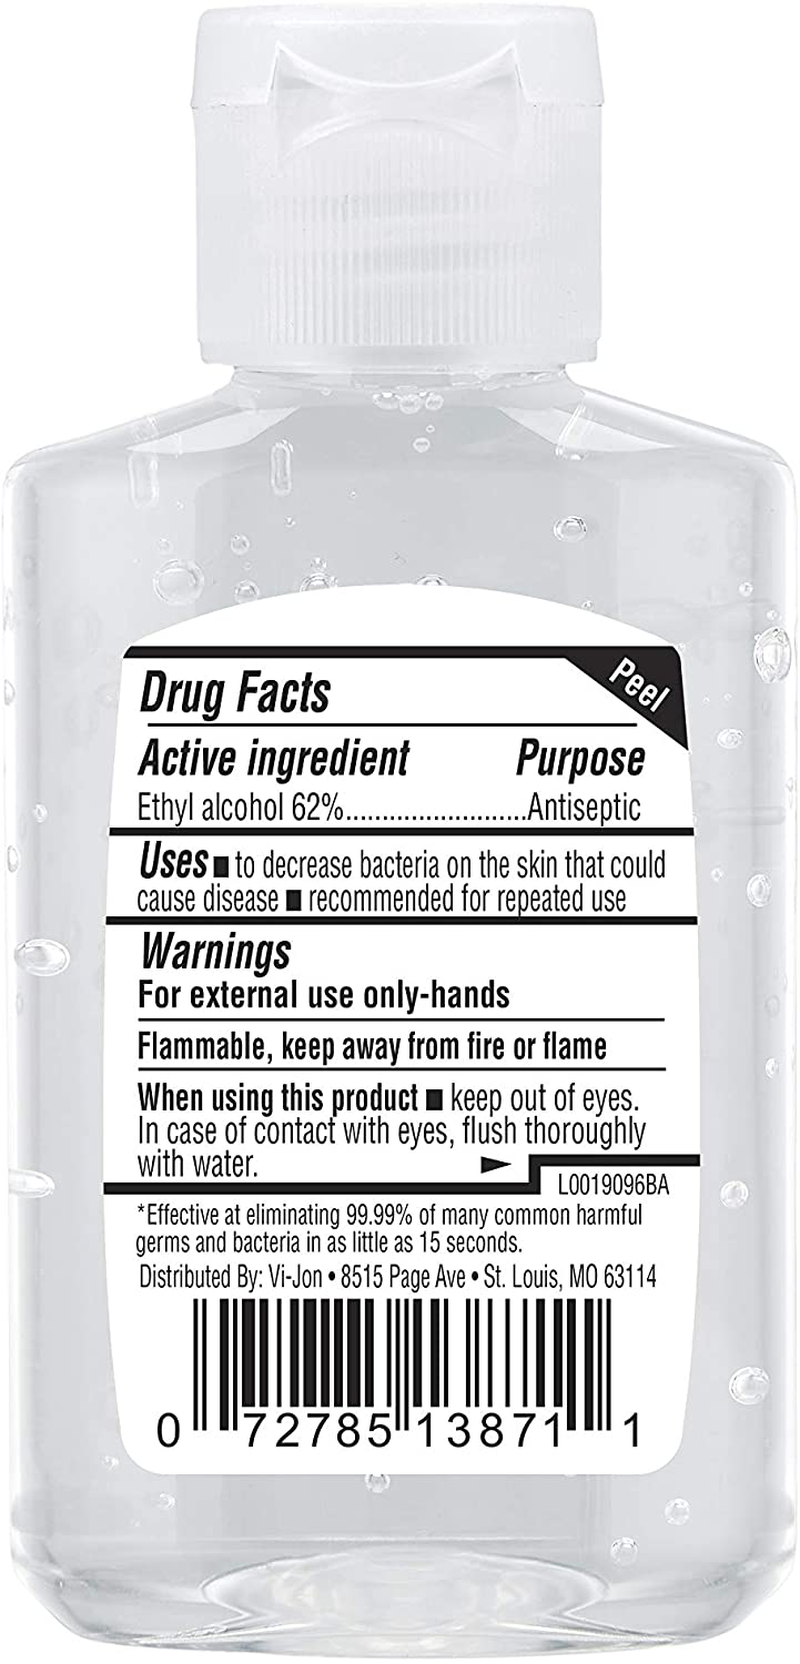 Germ-X Original Hand Sanitizer, 2 Fluid Ounce Bottles (Pack of 48), 96 Fl Oz